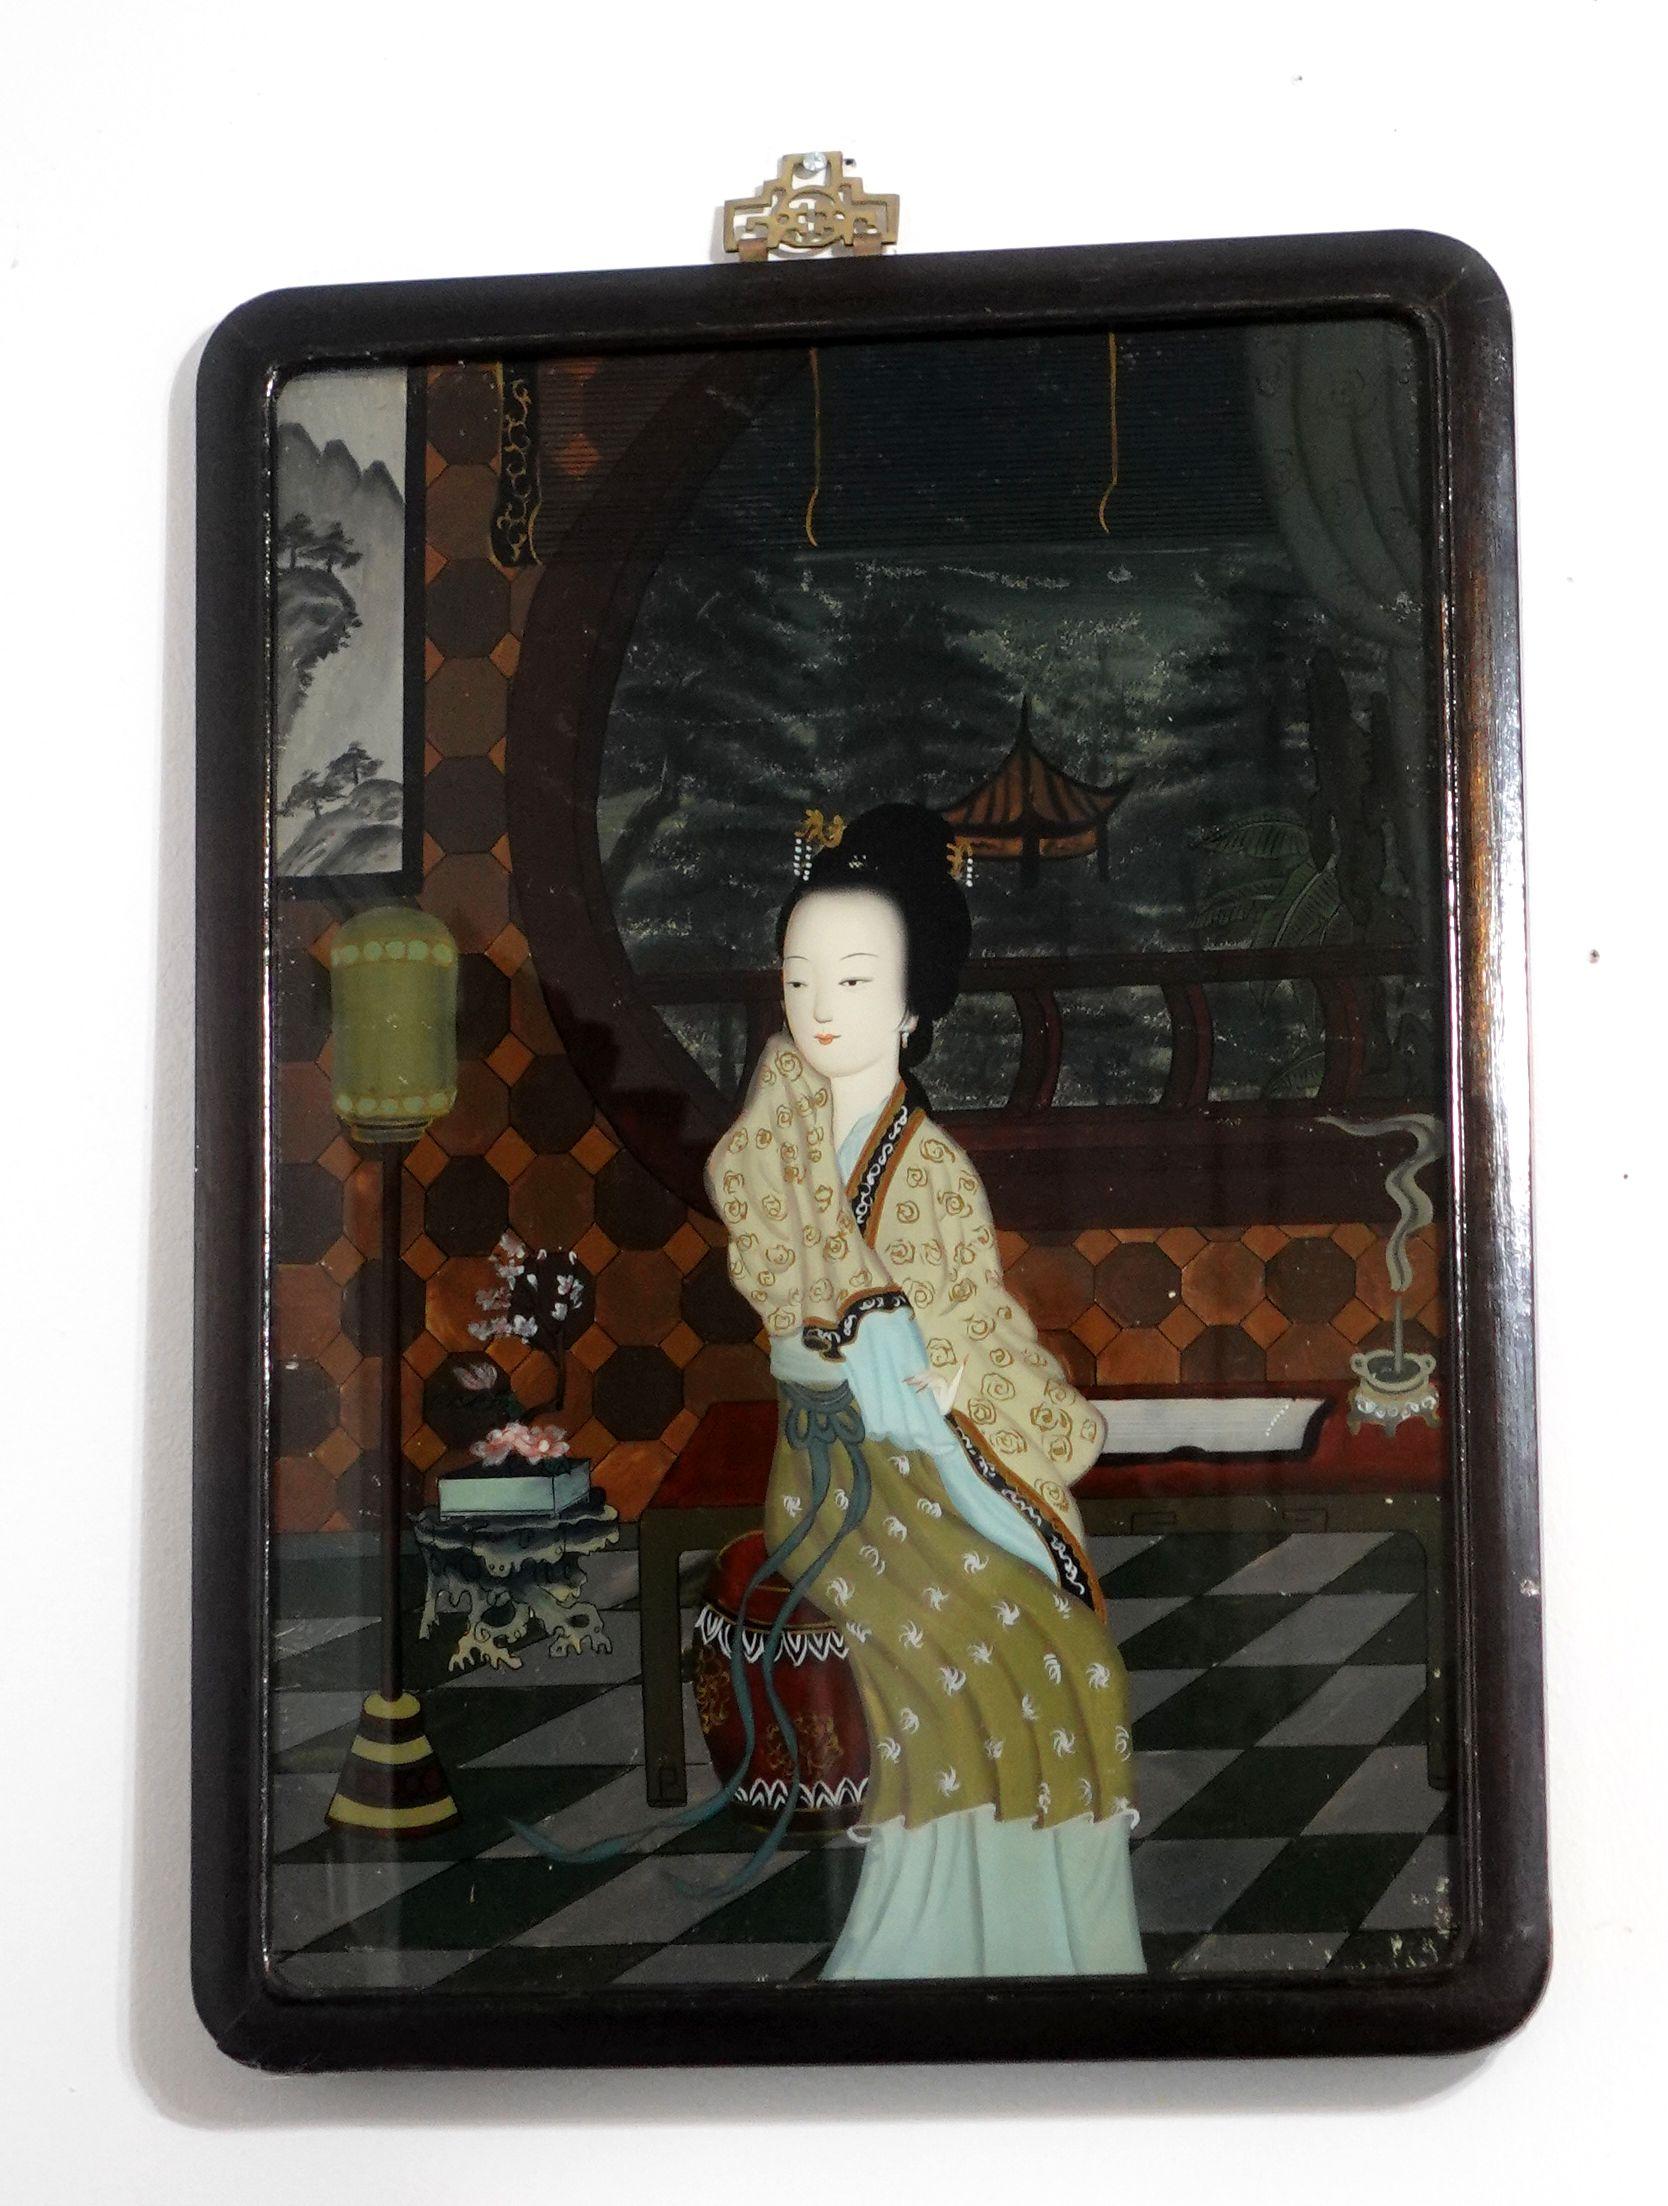 Ein charmantes chinesisches Hinterglasgemälde aus dem späten 19. bis frühen 20. Jahrhundert, das eine im Wohnzimmer sitzende Dame mit einem Garten im Hintergrund zeigt. Die Dekoration des Zimmers stellt ein sehr traditionelles chinesisches Zeichen